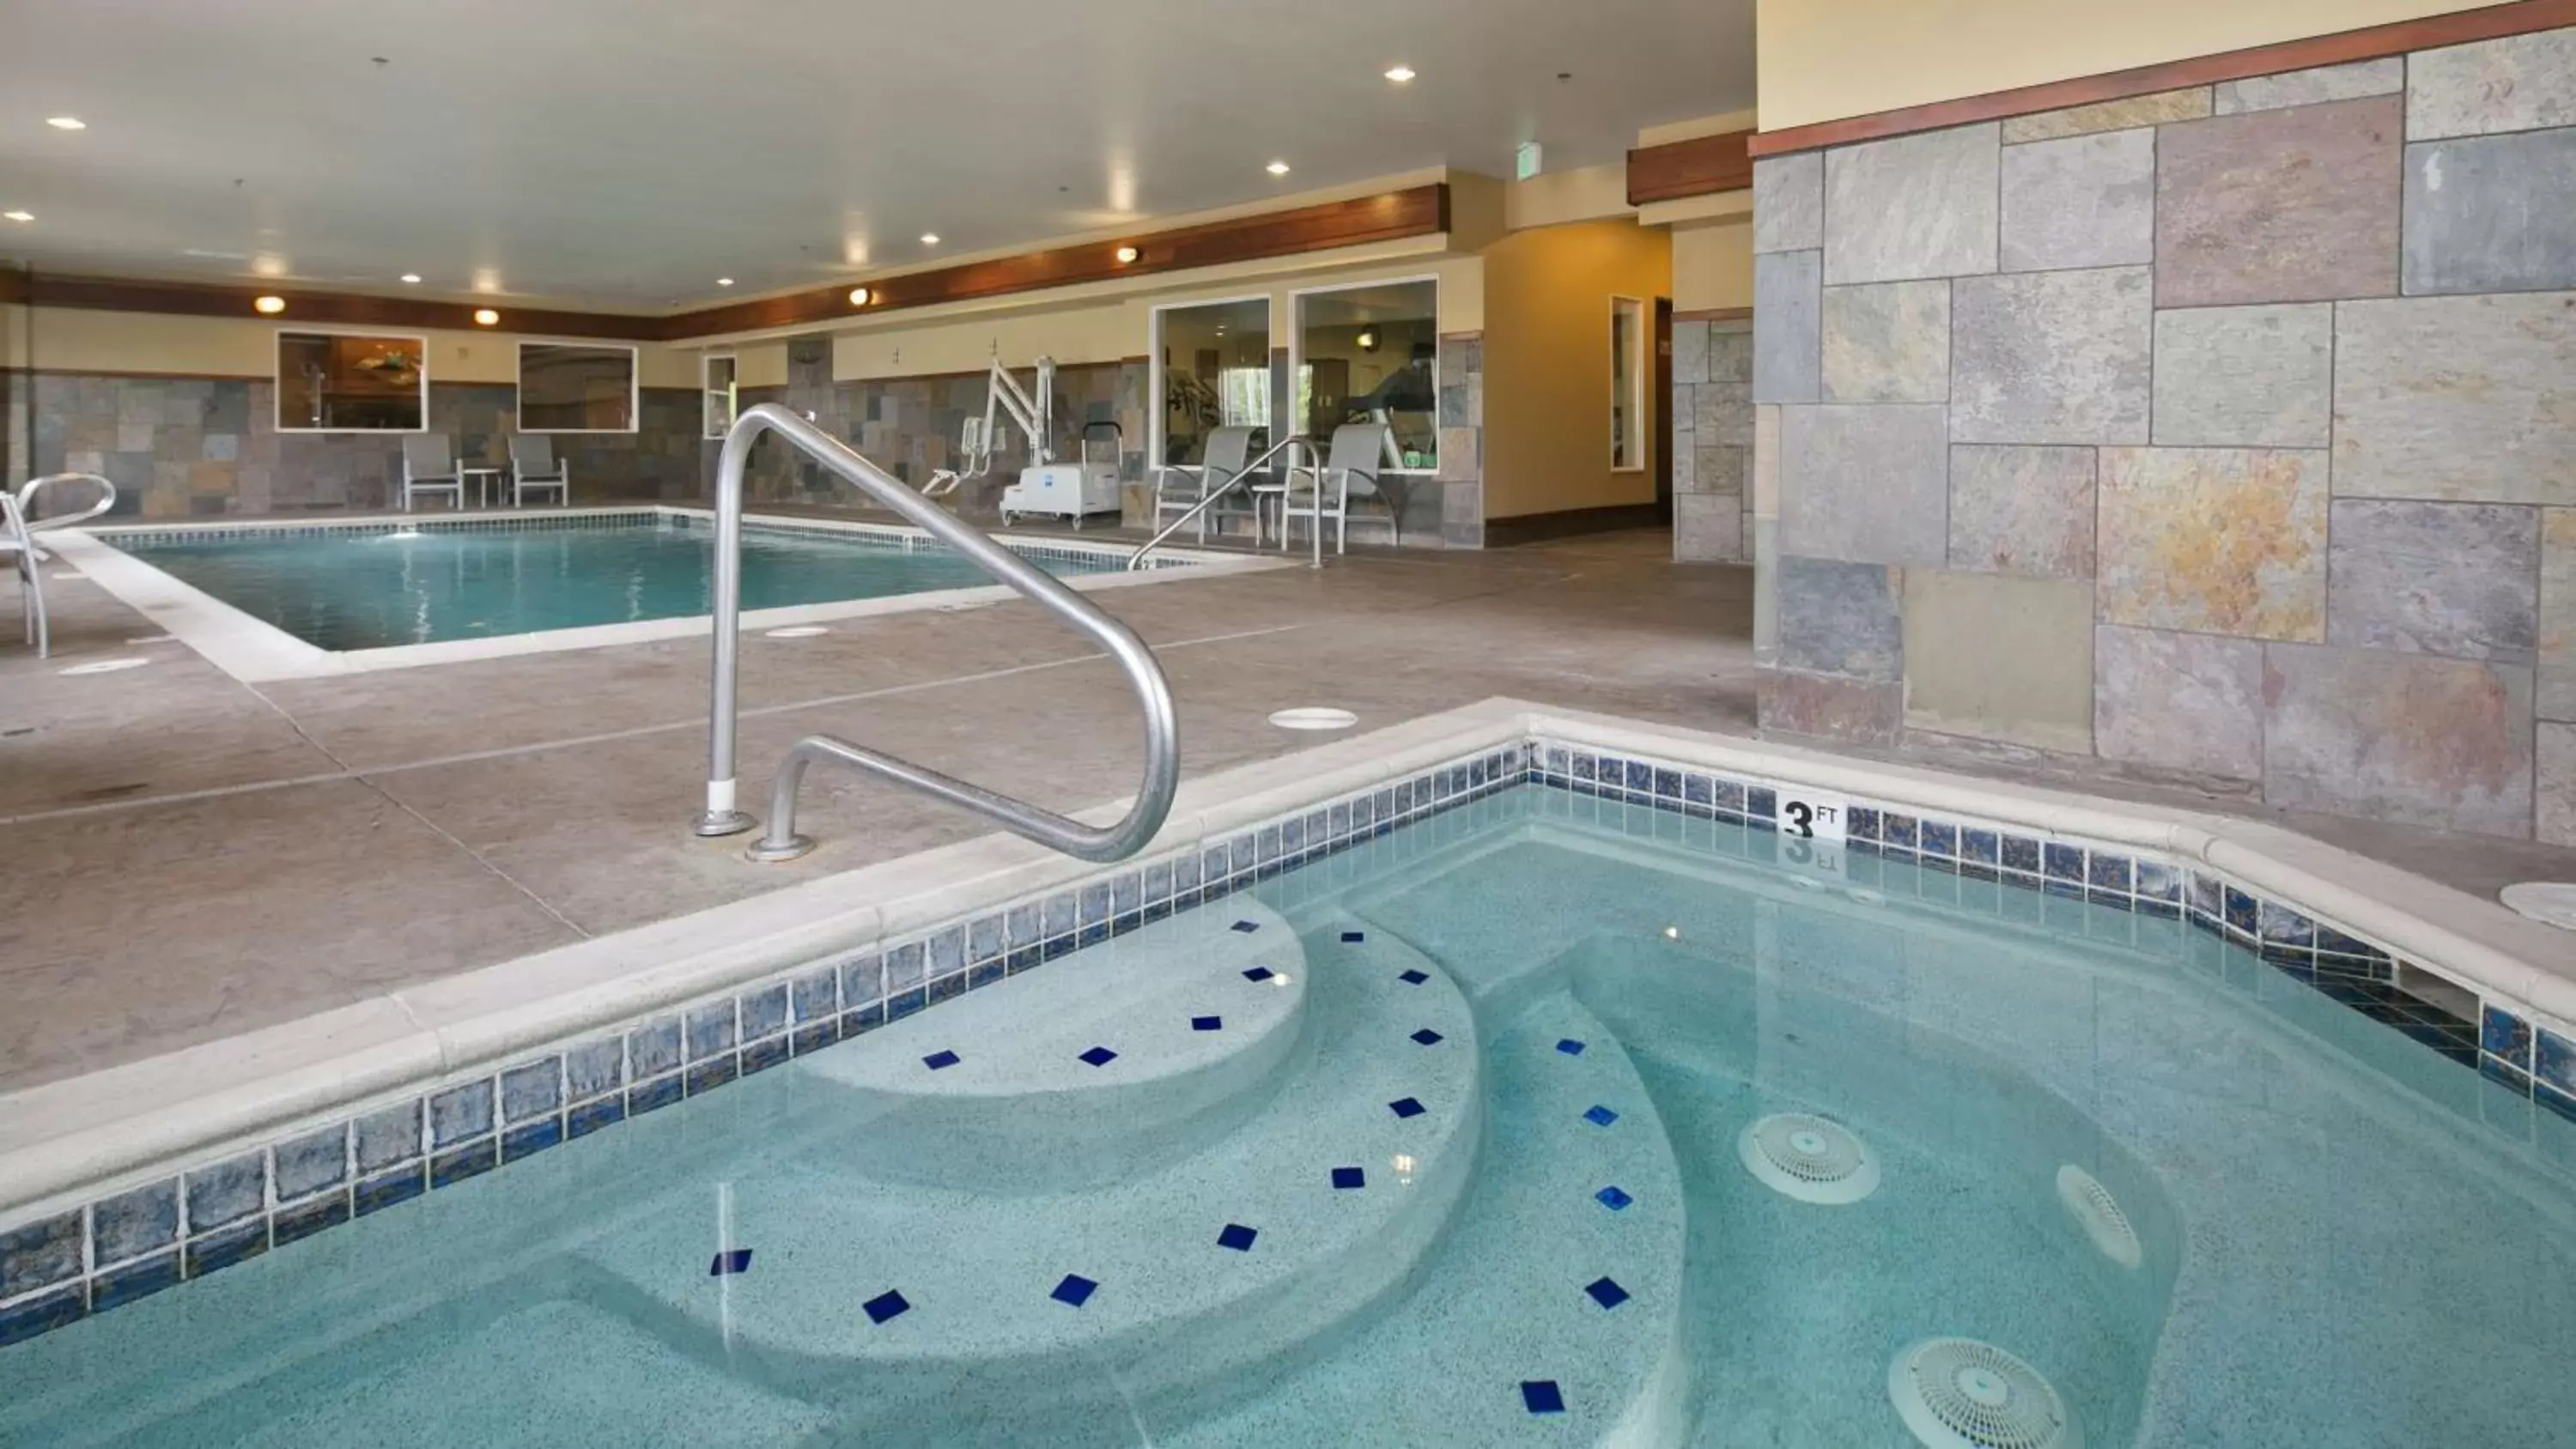 On site, Swimming Pool in Best Western Plus Ellensburg Hotel